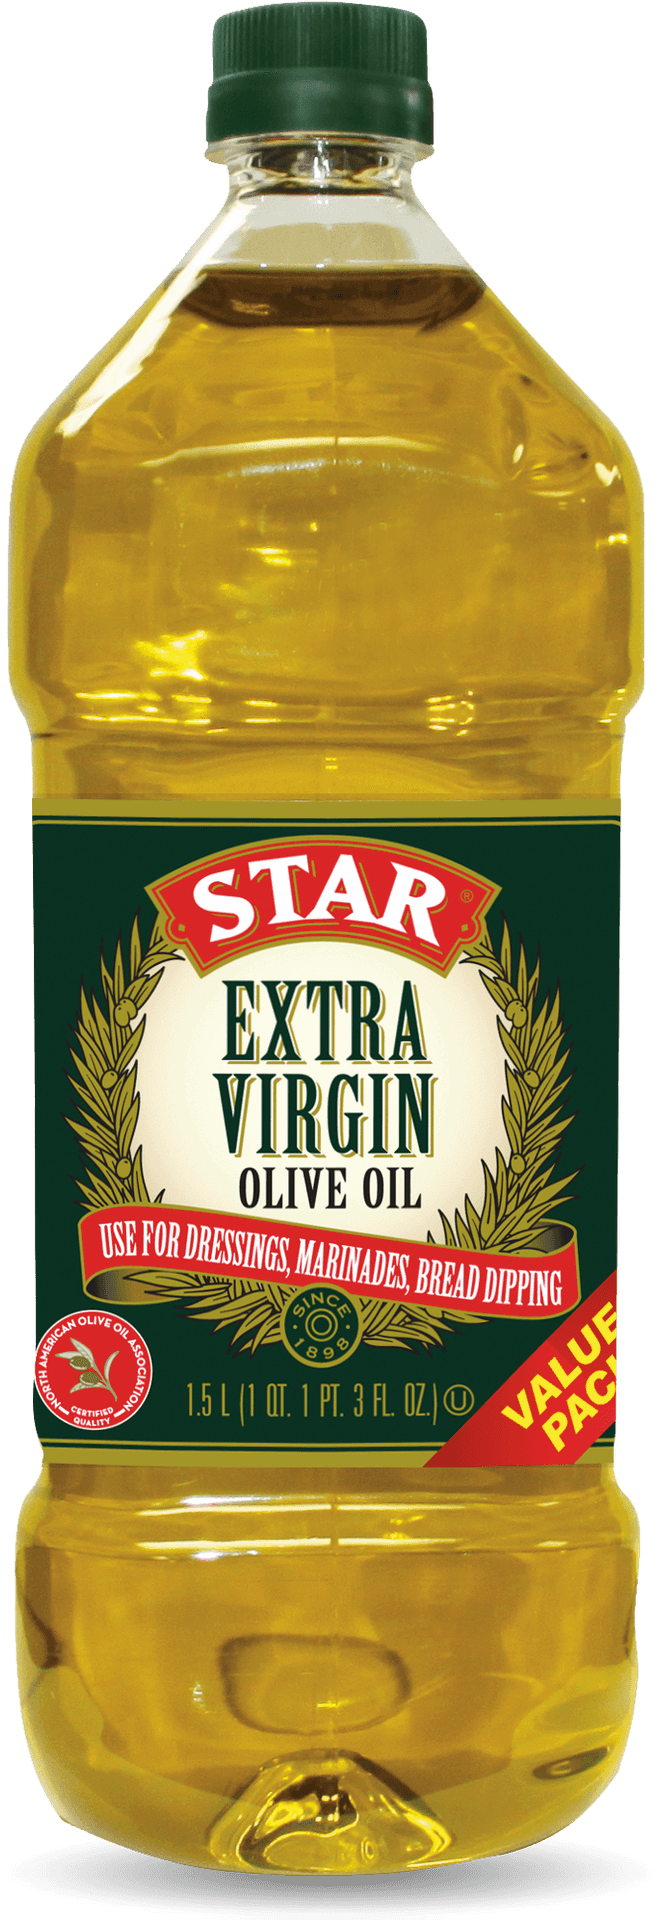 Star Extra Virgin Olive Oil Bottle PNG